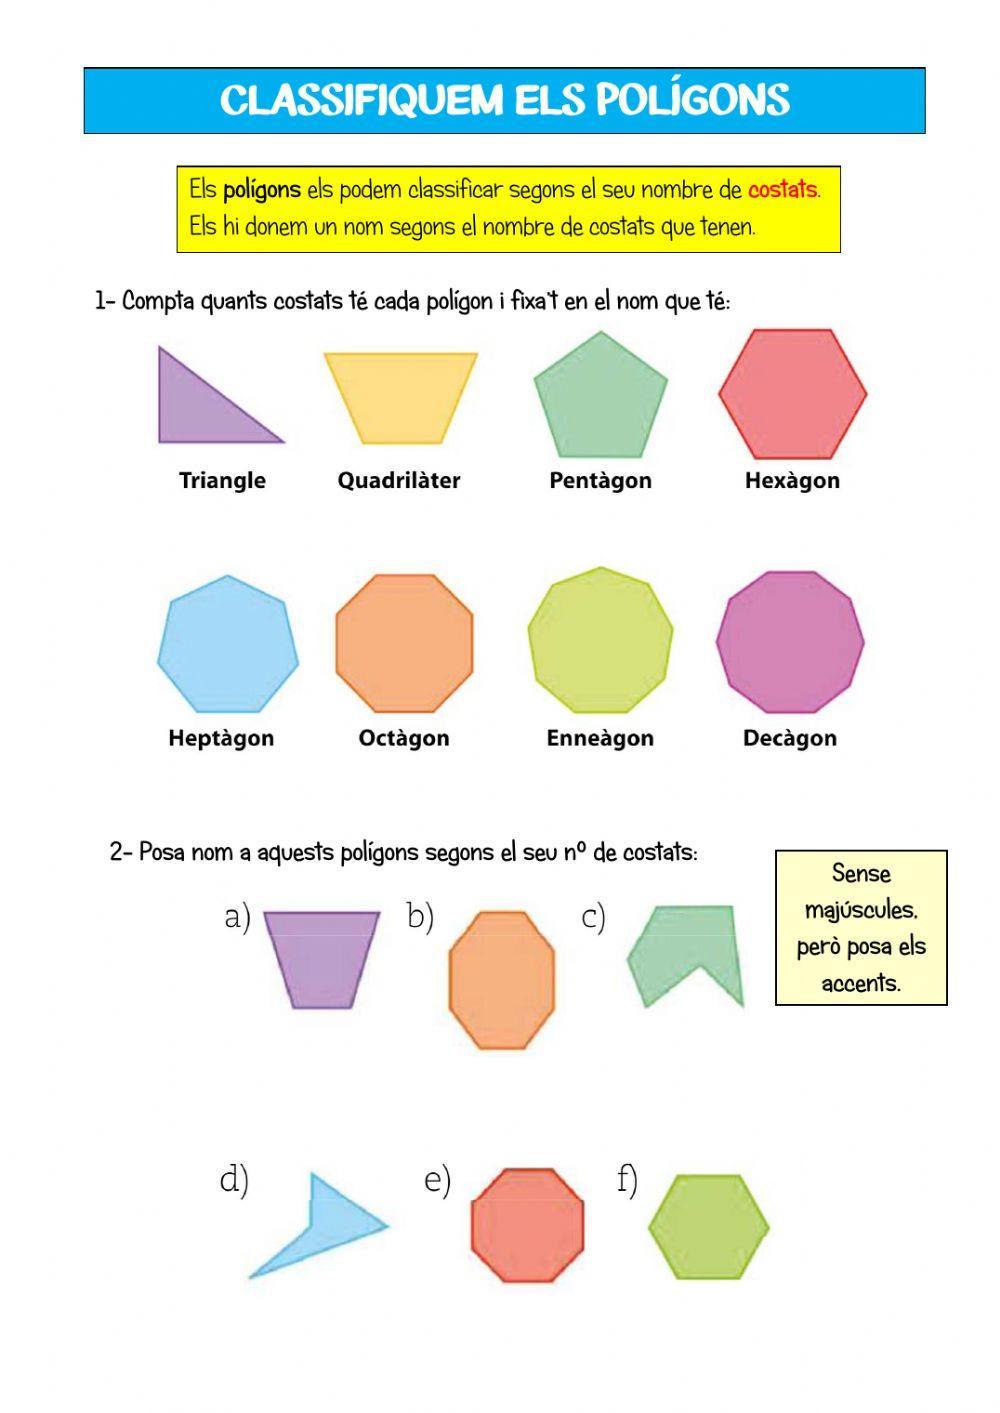 Polígons - Classificació